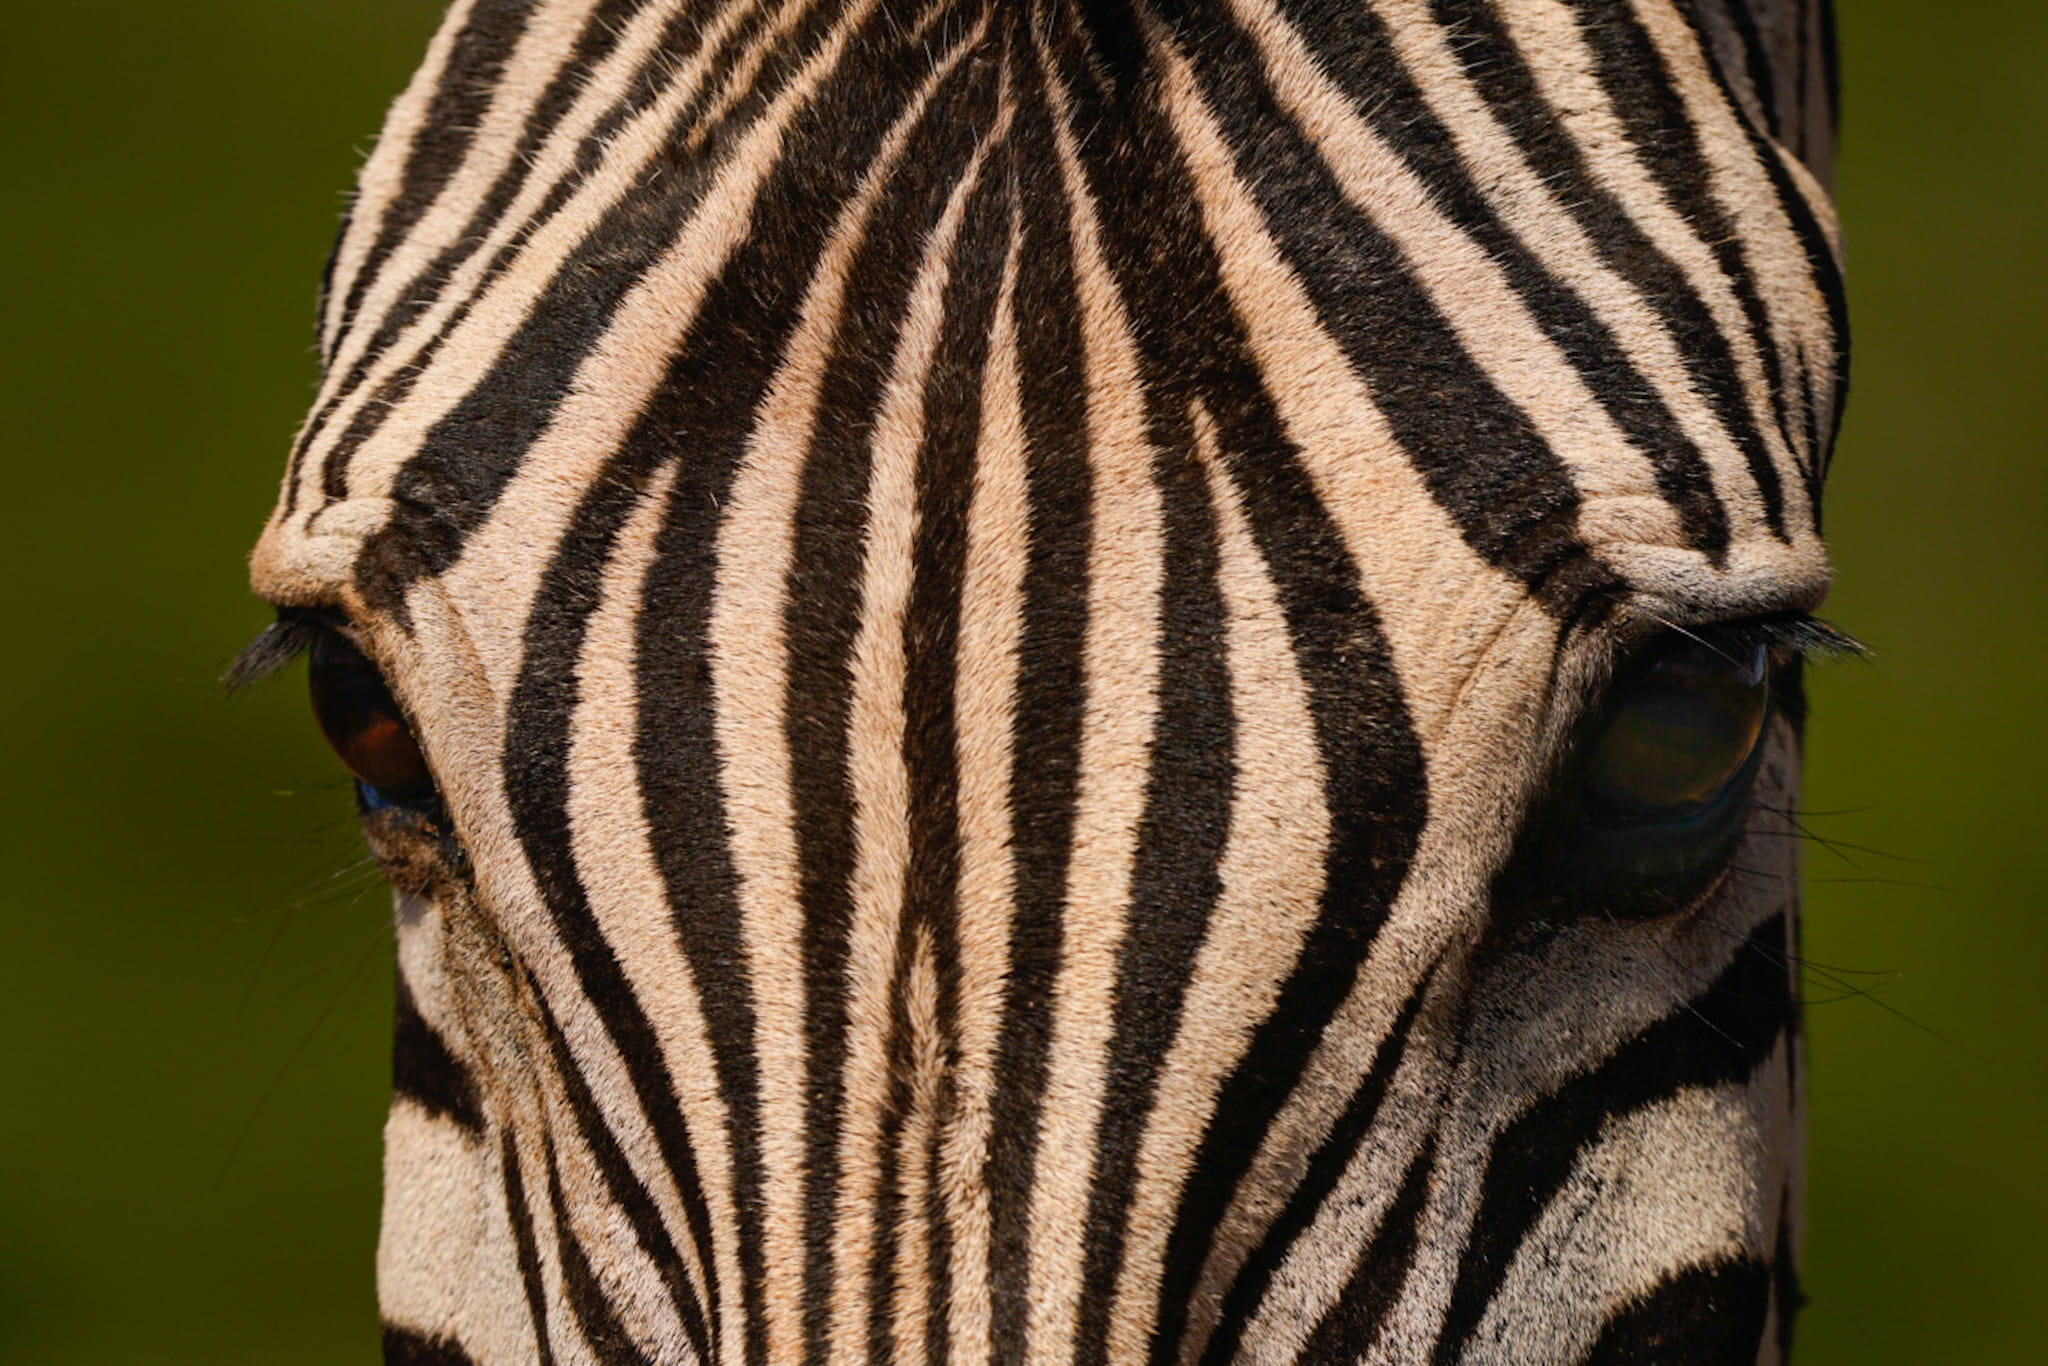 Zebras von unten zu fotografieren ist spannend. Man sieht diese Tiere auf normalen Safaris immer von Safariautos, also eher von oben